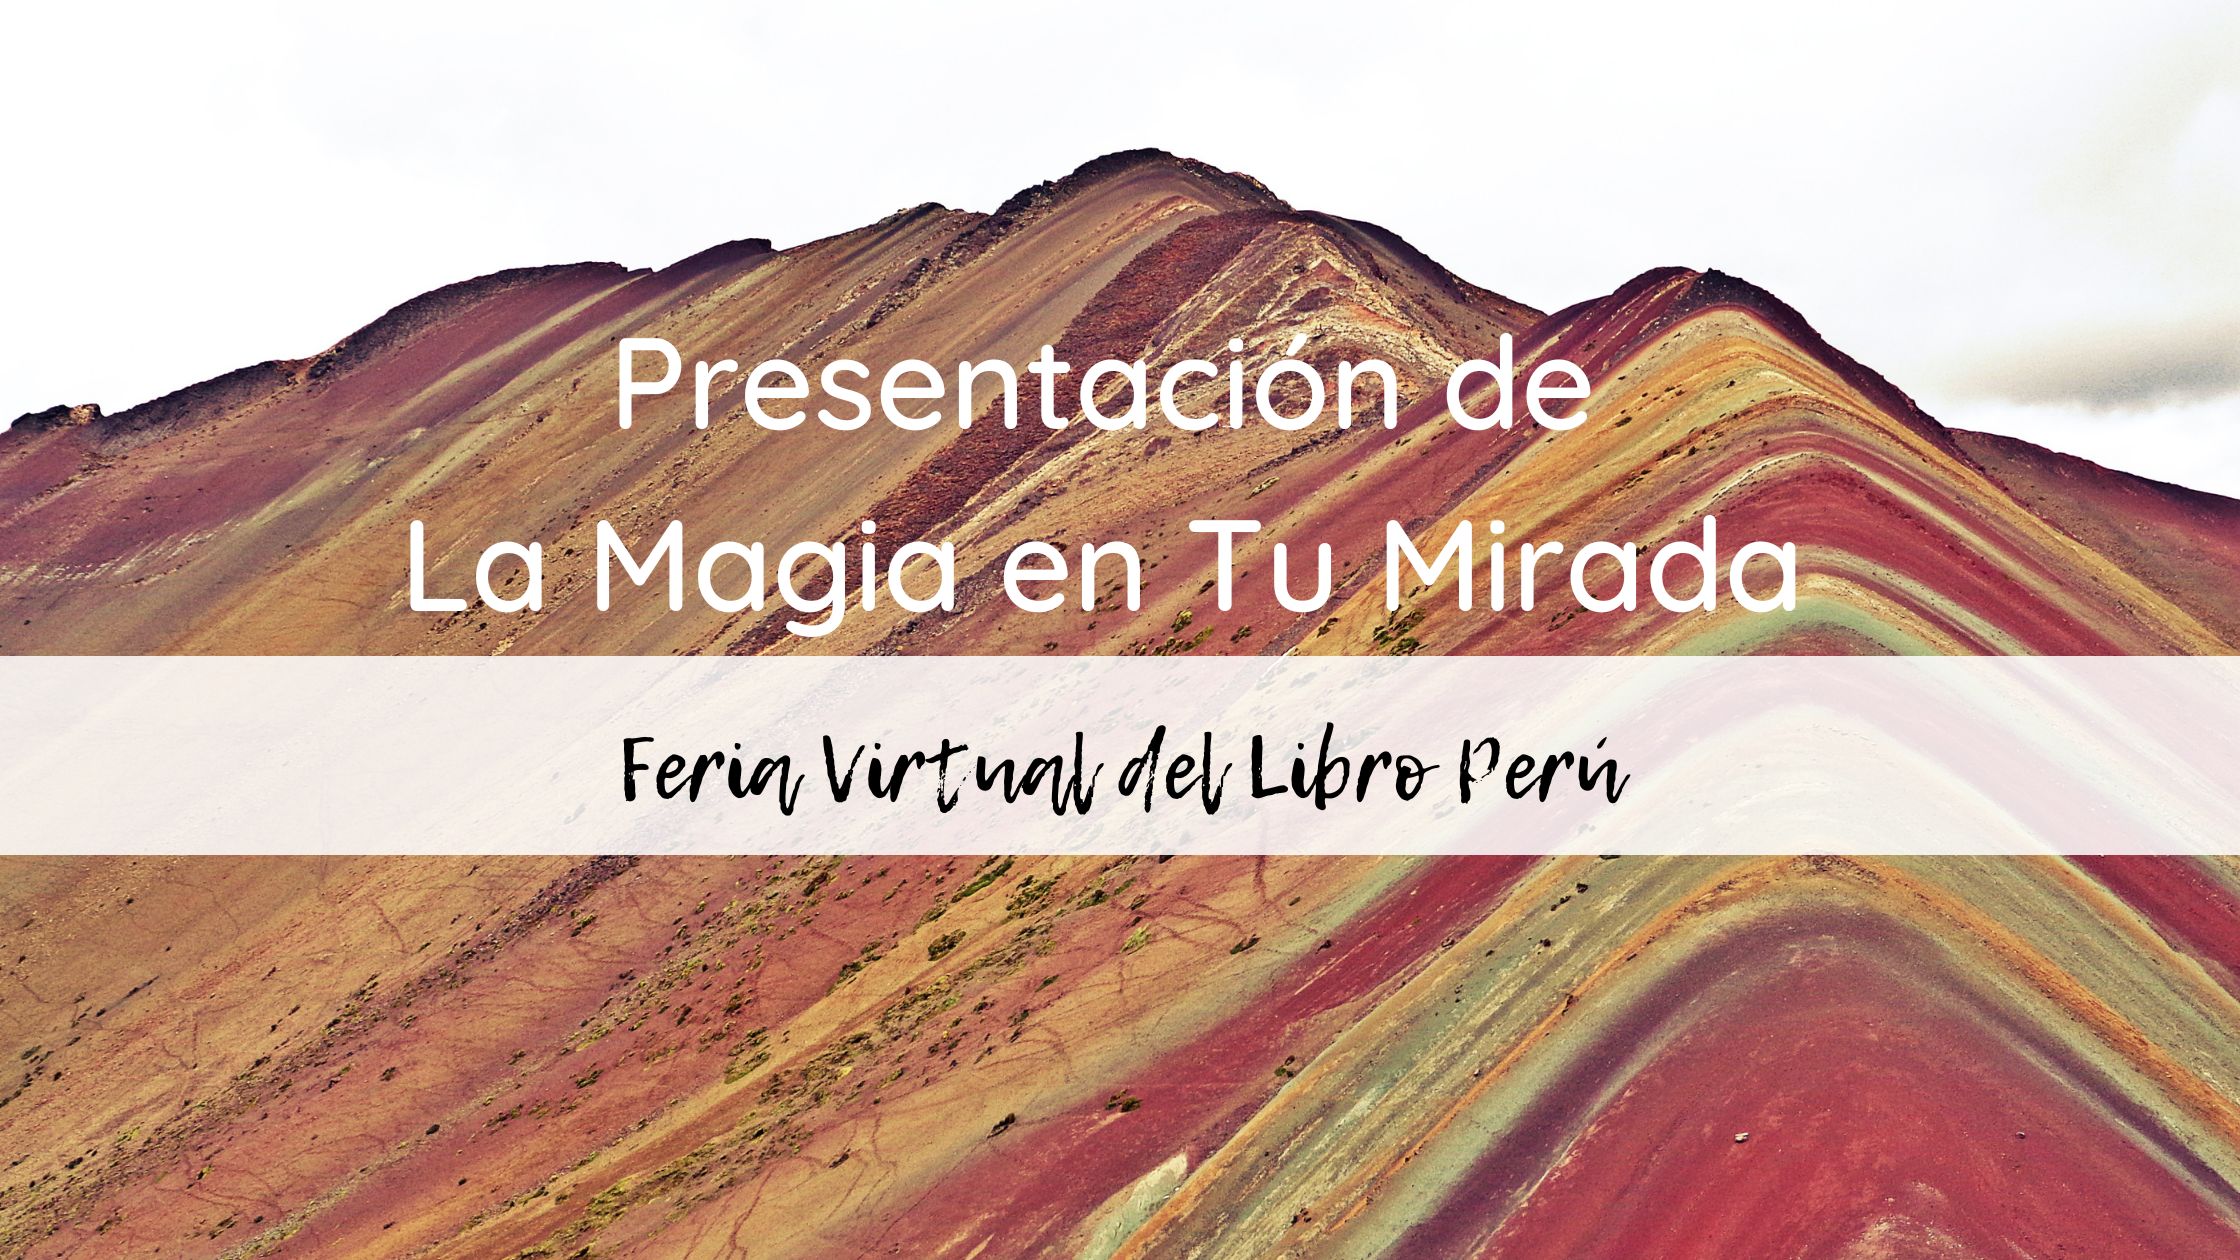 Presentación de La Magia en Tu Mirada en La Feria Virtual del Libro Perú